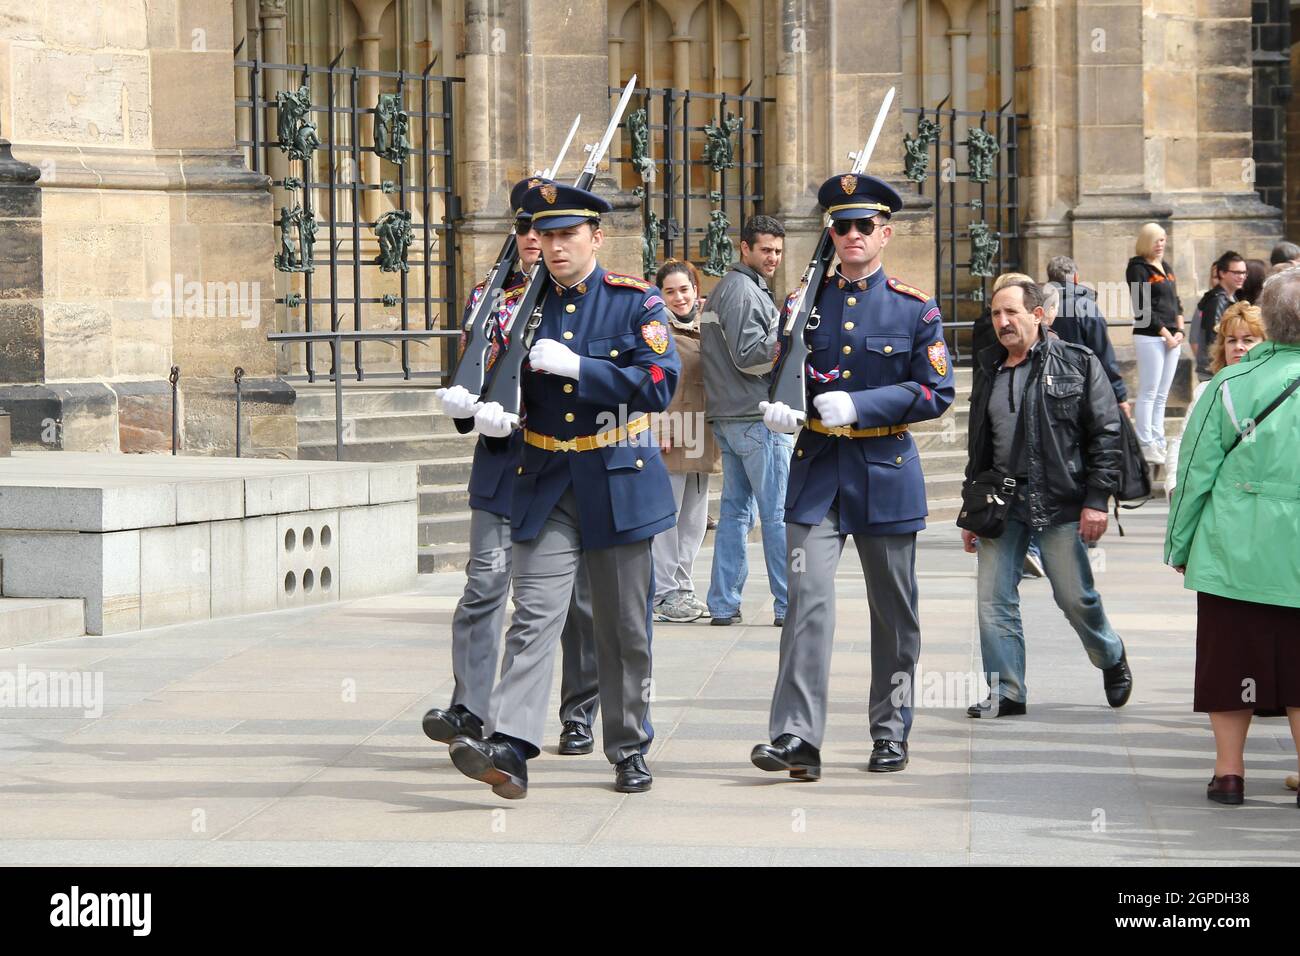 PRAG, TSCHECHIEN - 24. APRIL 2012: Diese Wachen werden zur Zeremonie des Wachwechsels auf der Prager Burg entsandt. Stockfoto